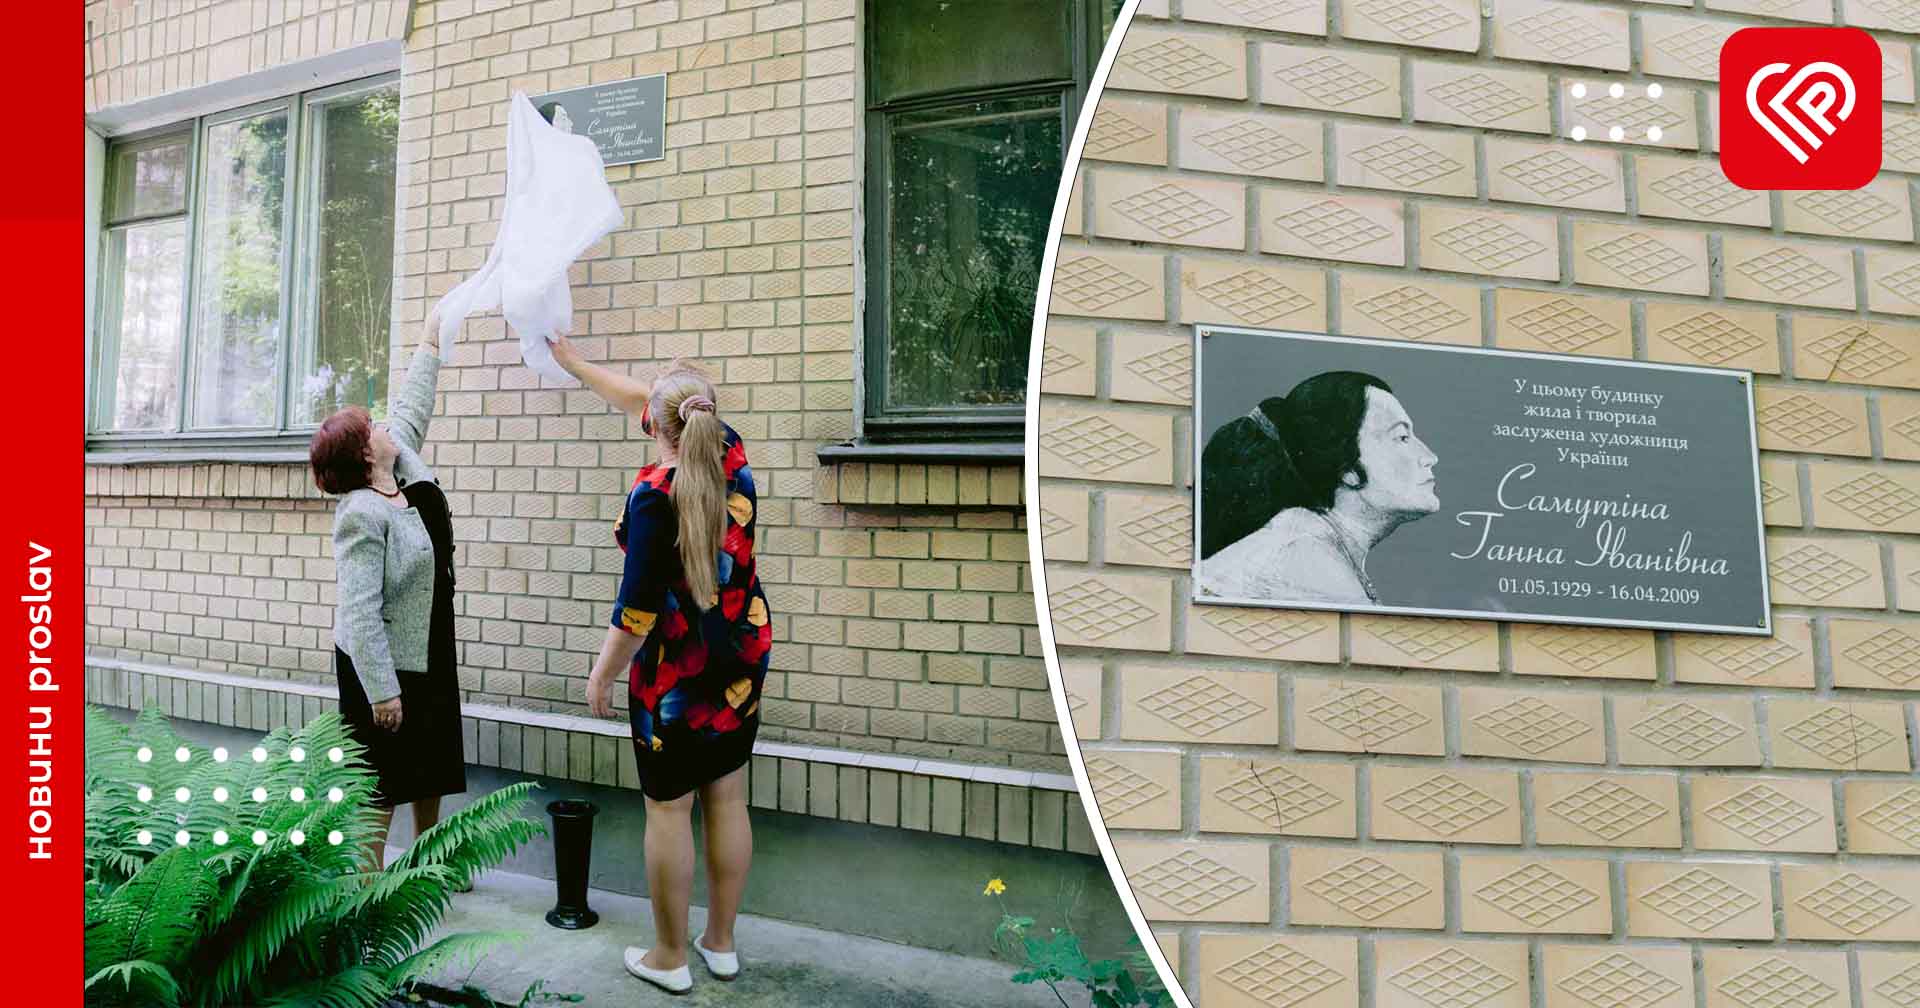 На будинку в Переяславі, в якому жила видатна художниця Ганна Самутіна, встановили меморіальну дошку